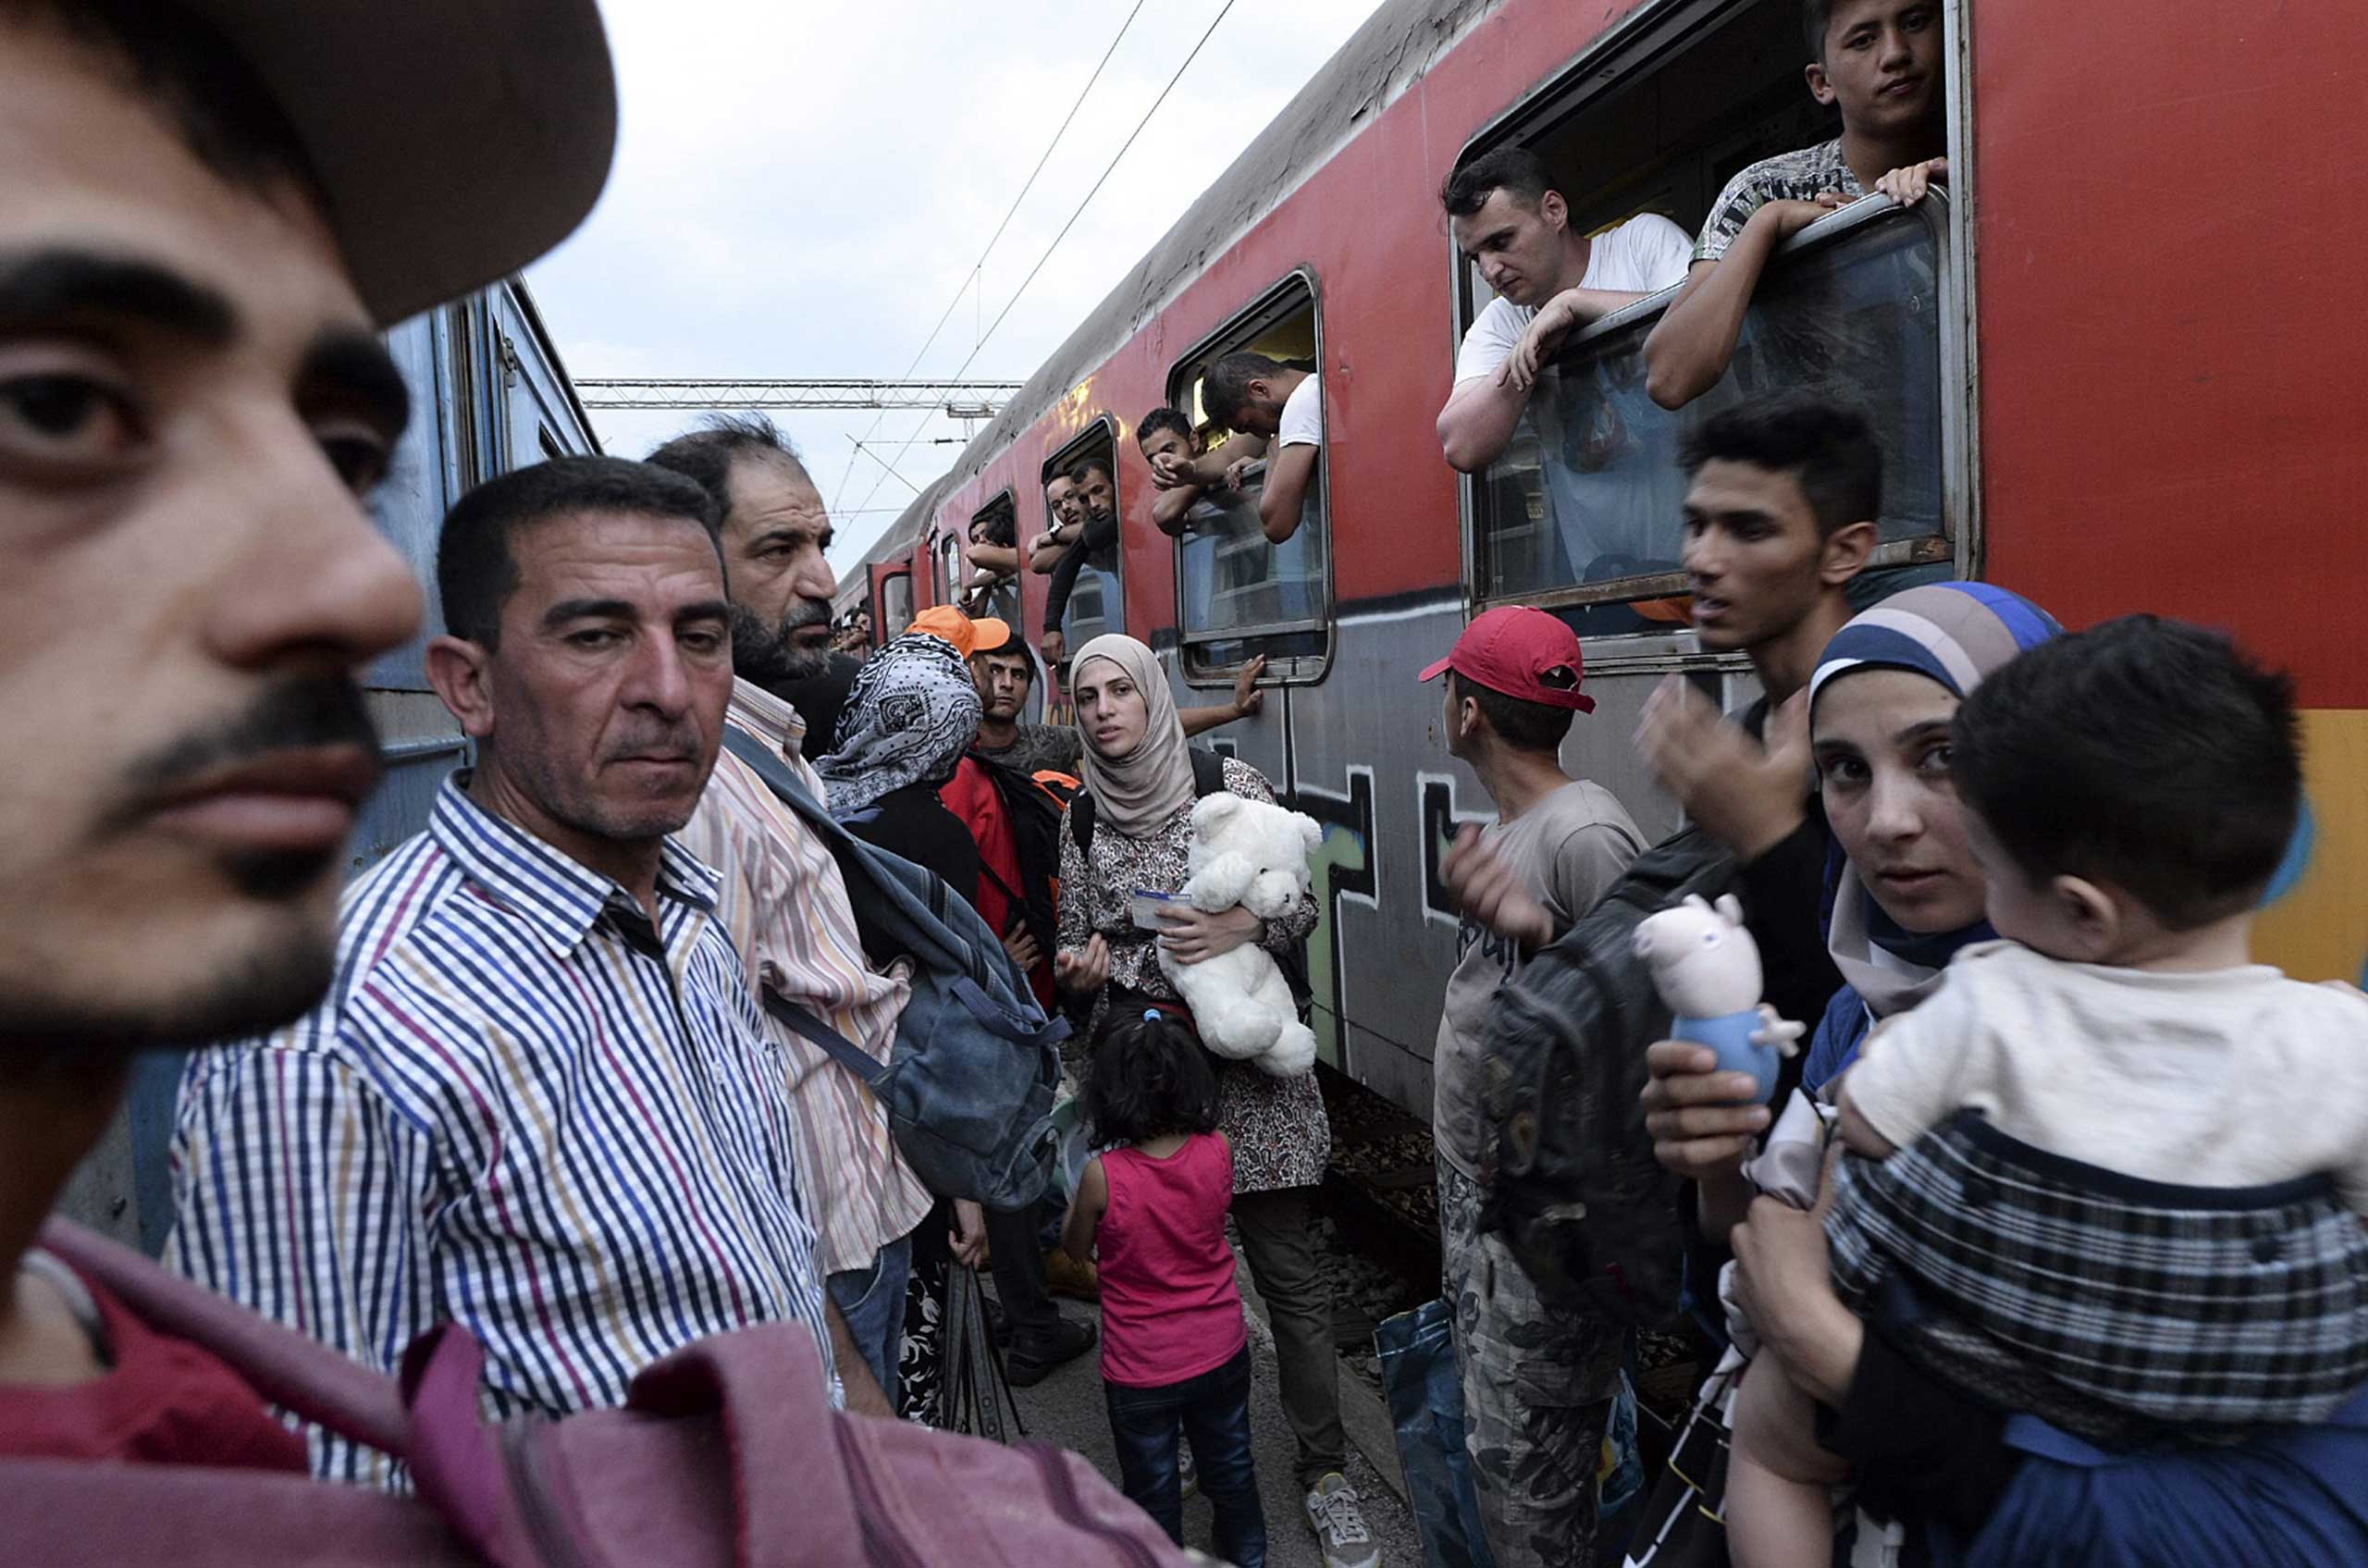 Europe Migrant Crisis